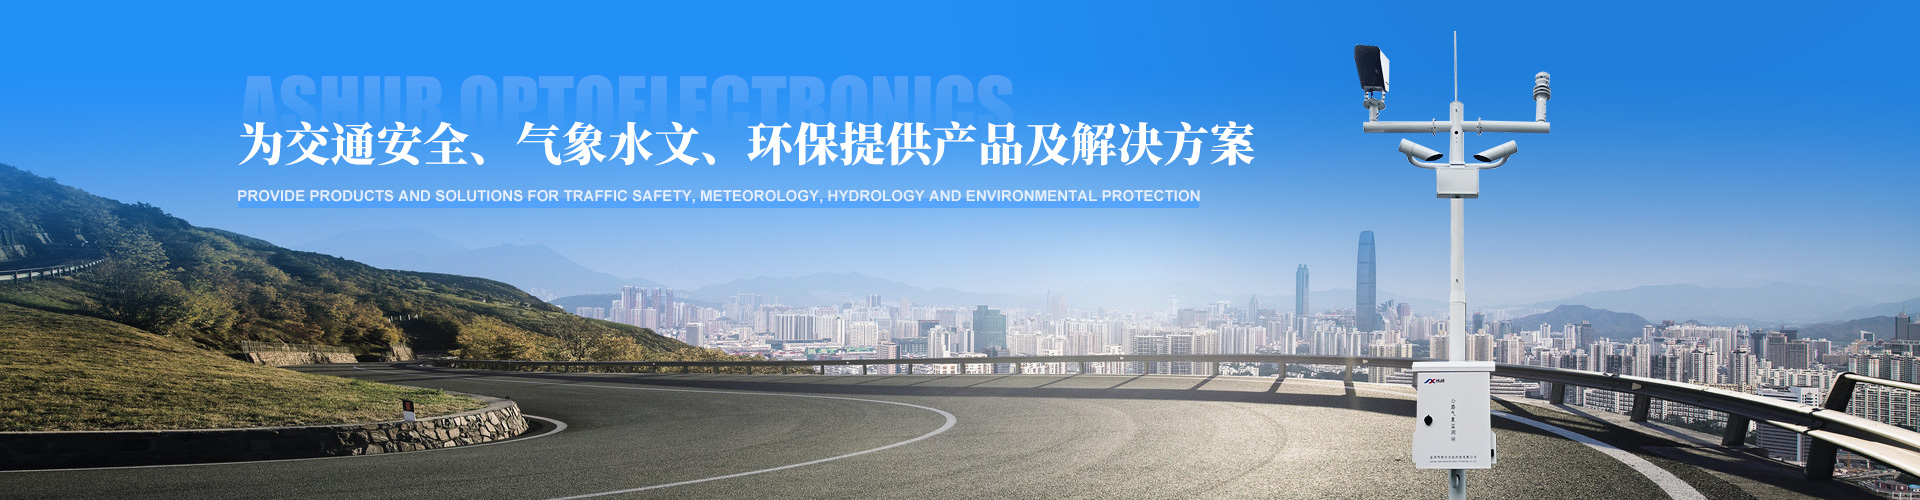 阿舒爾攜眾多氣象監測產品亮相第二十四屆中國高速公路信息化大會